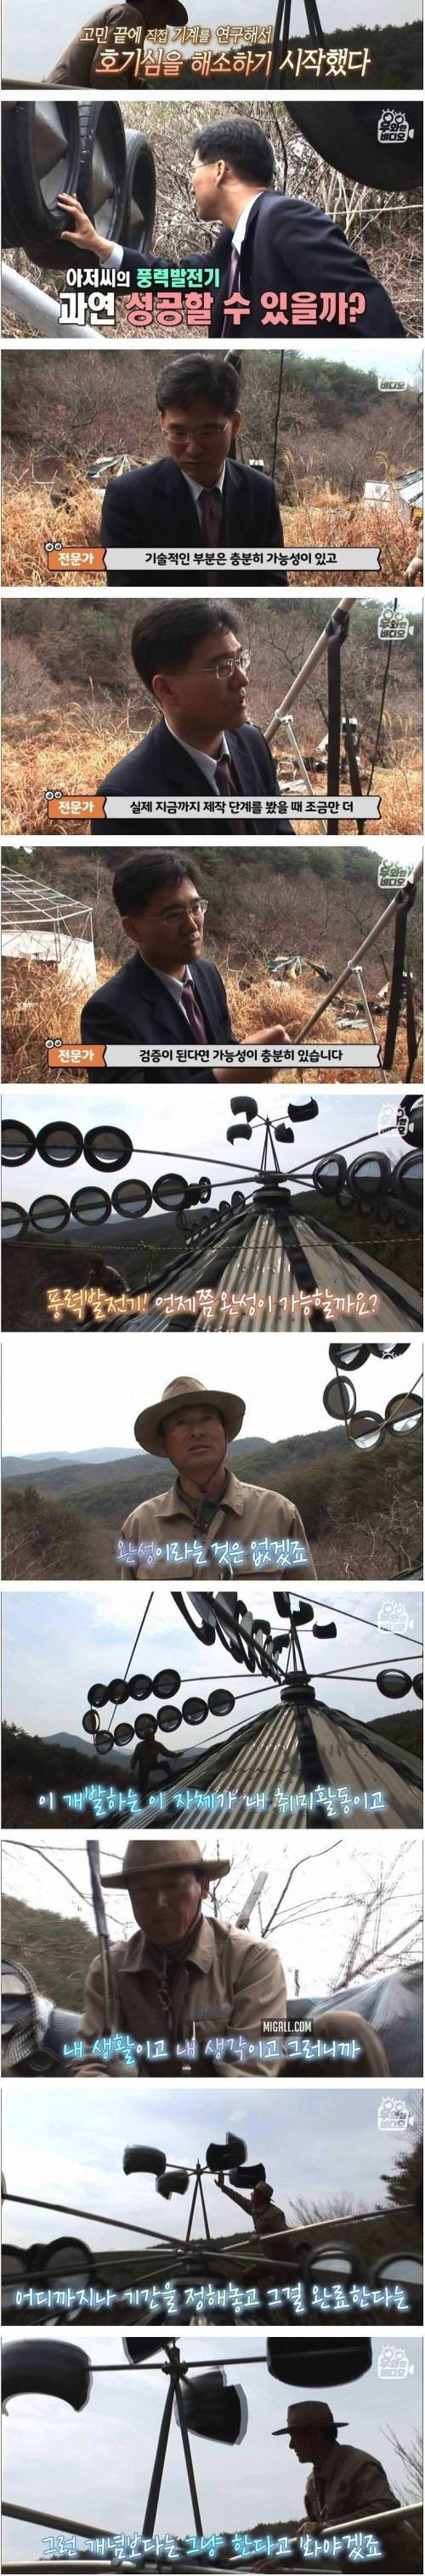 [스압] 아저씨가 취미활동으로 만든 풍력발전기.jpg